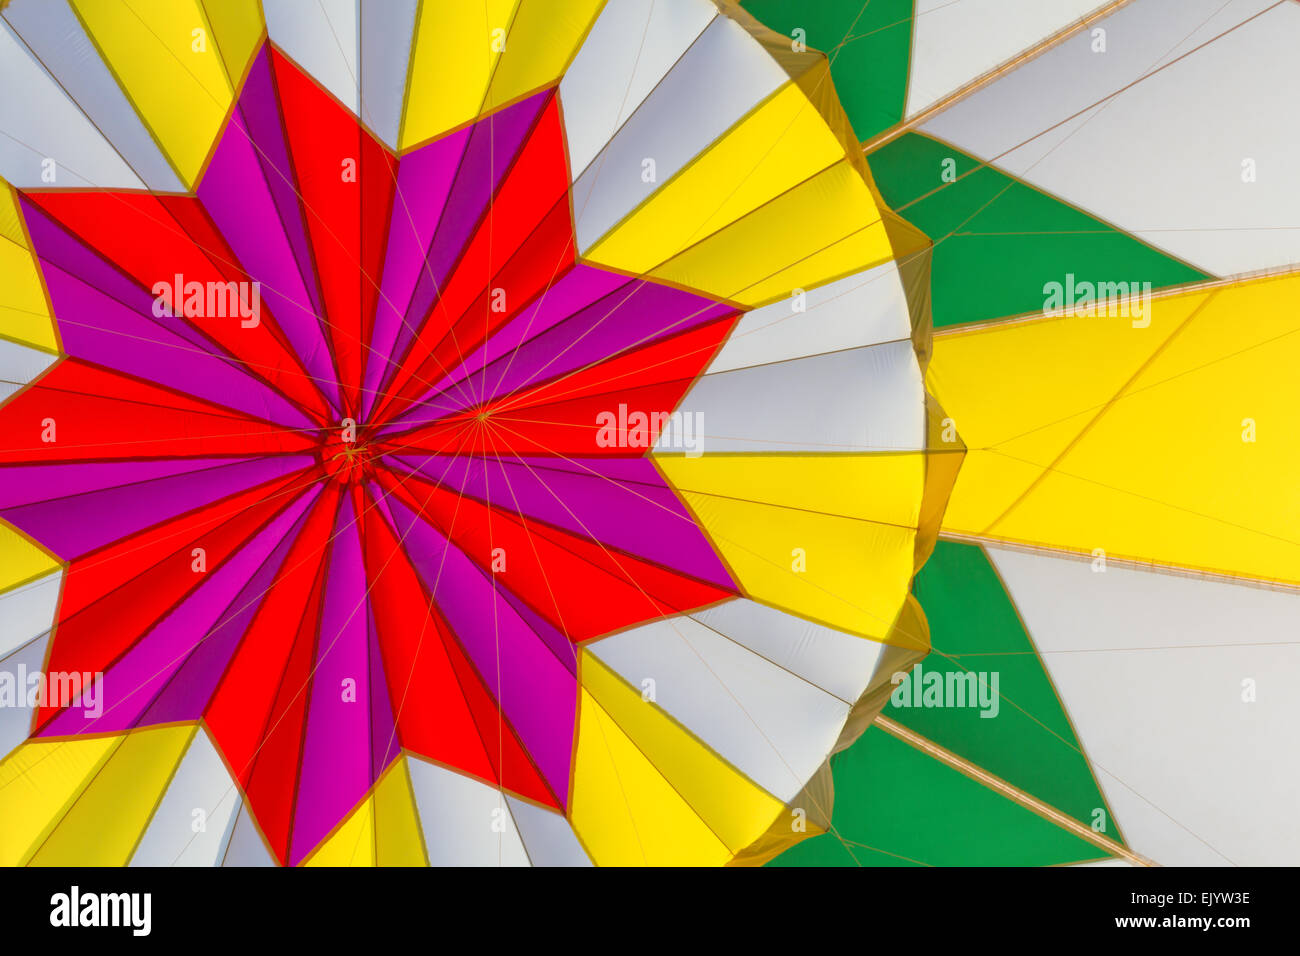 Una fotografia scattata da dentro una mongolfiera mostra i colori vivaci e i modelli del suo design. Foto Stock